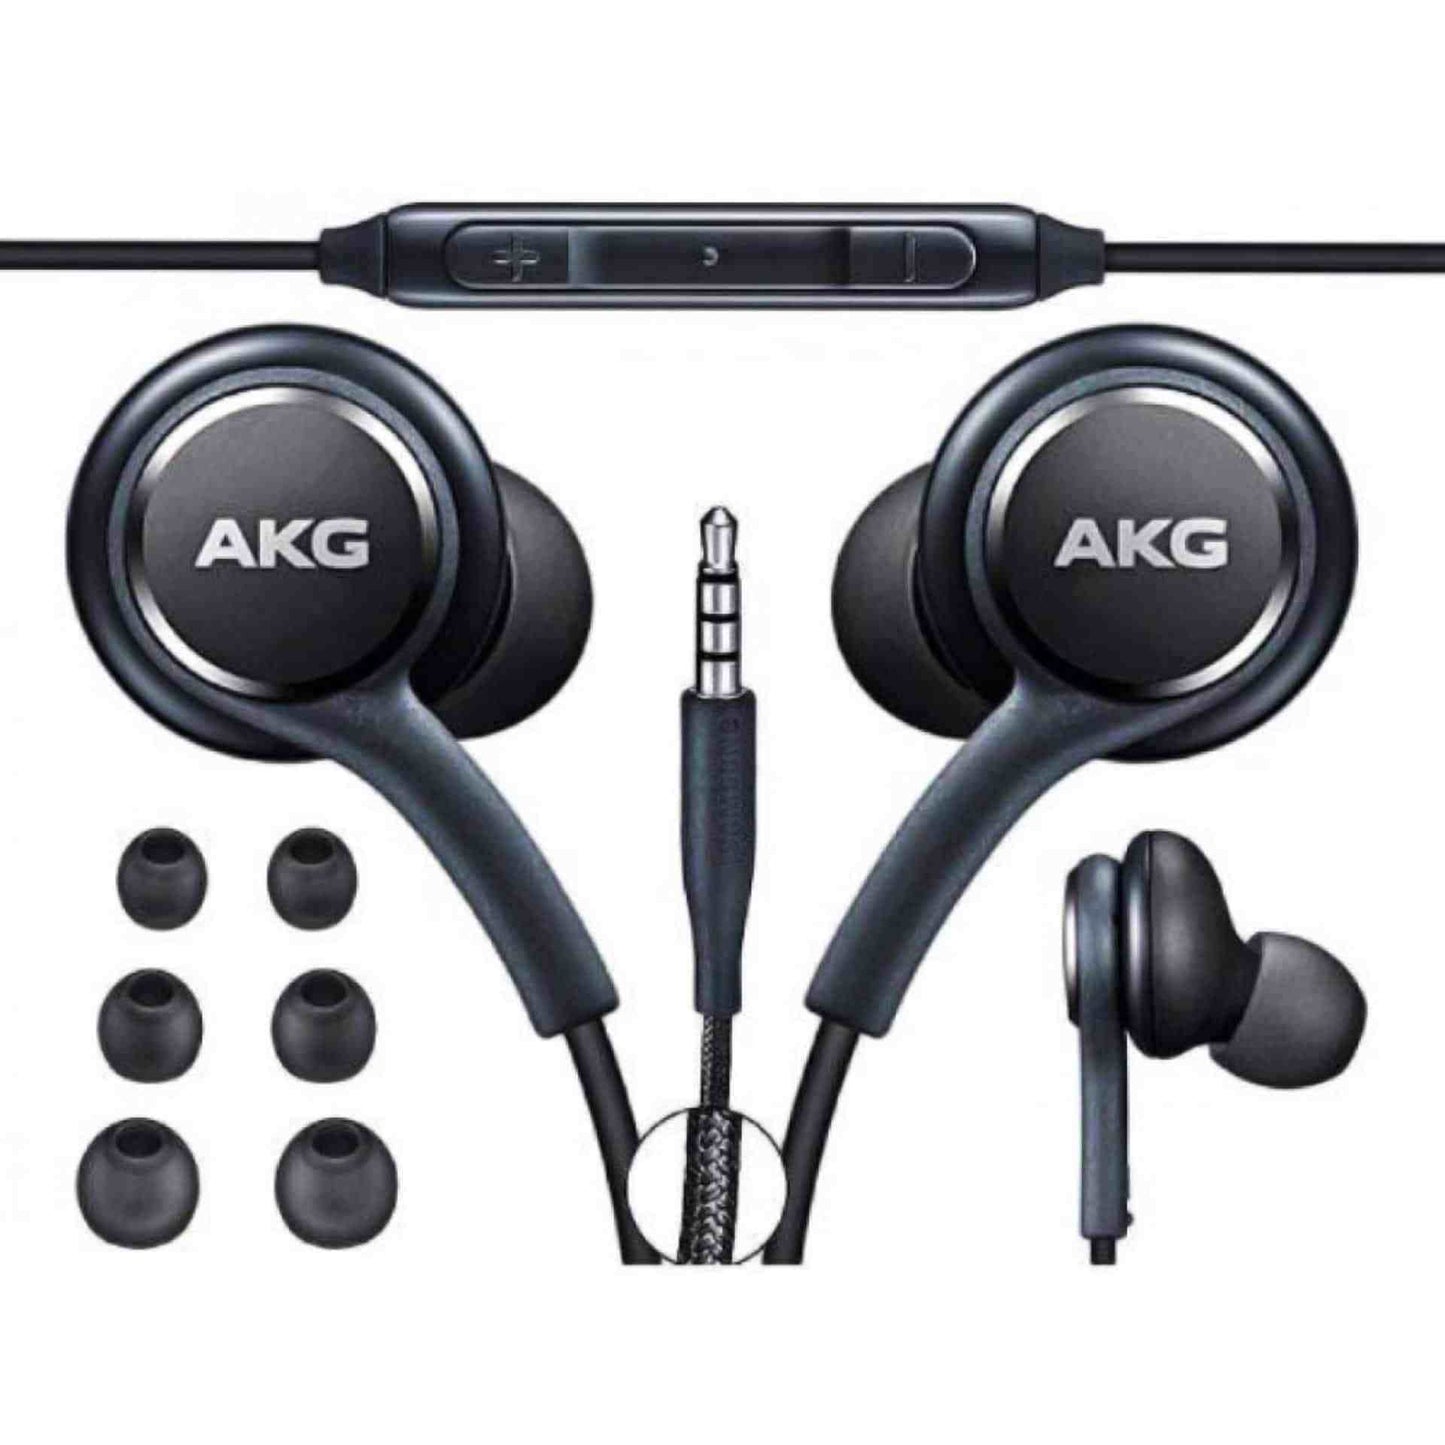 AKG Handsfree | High quality Earphones | Super Deals